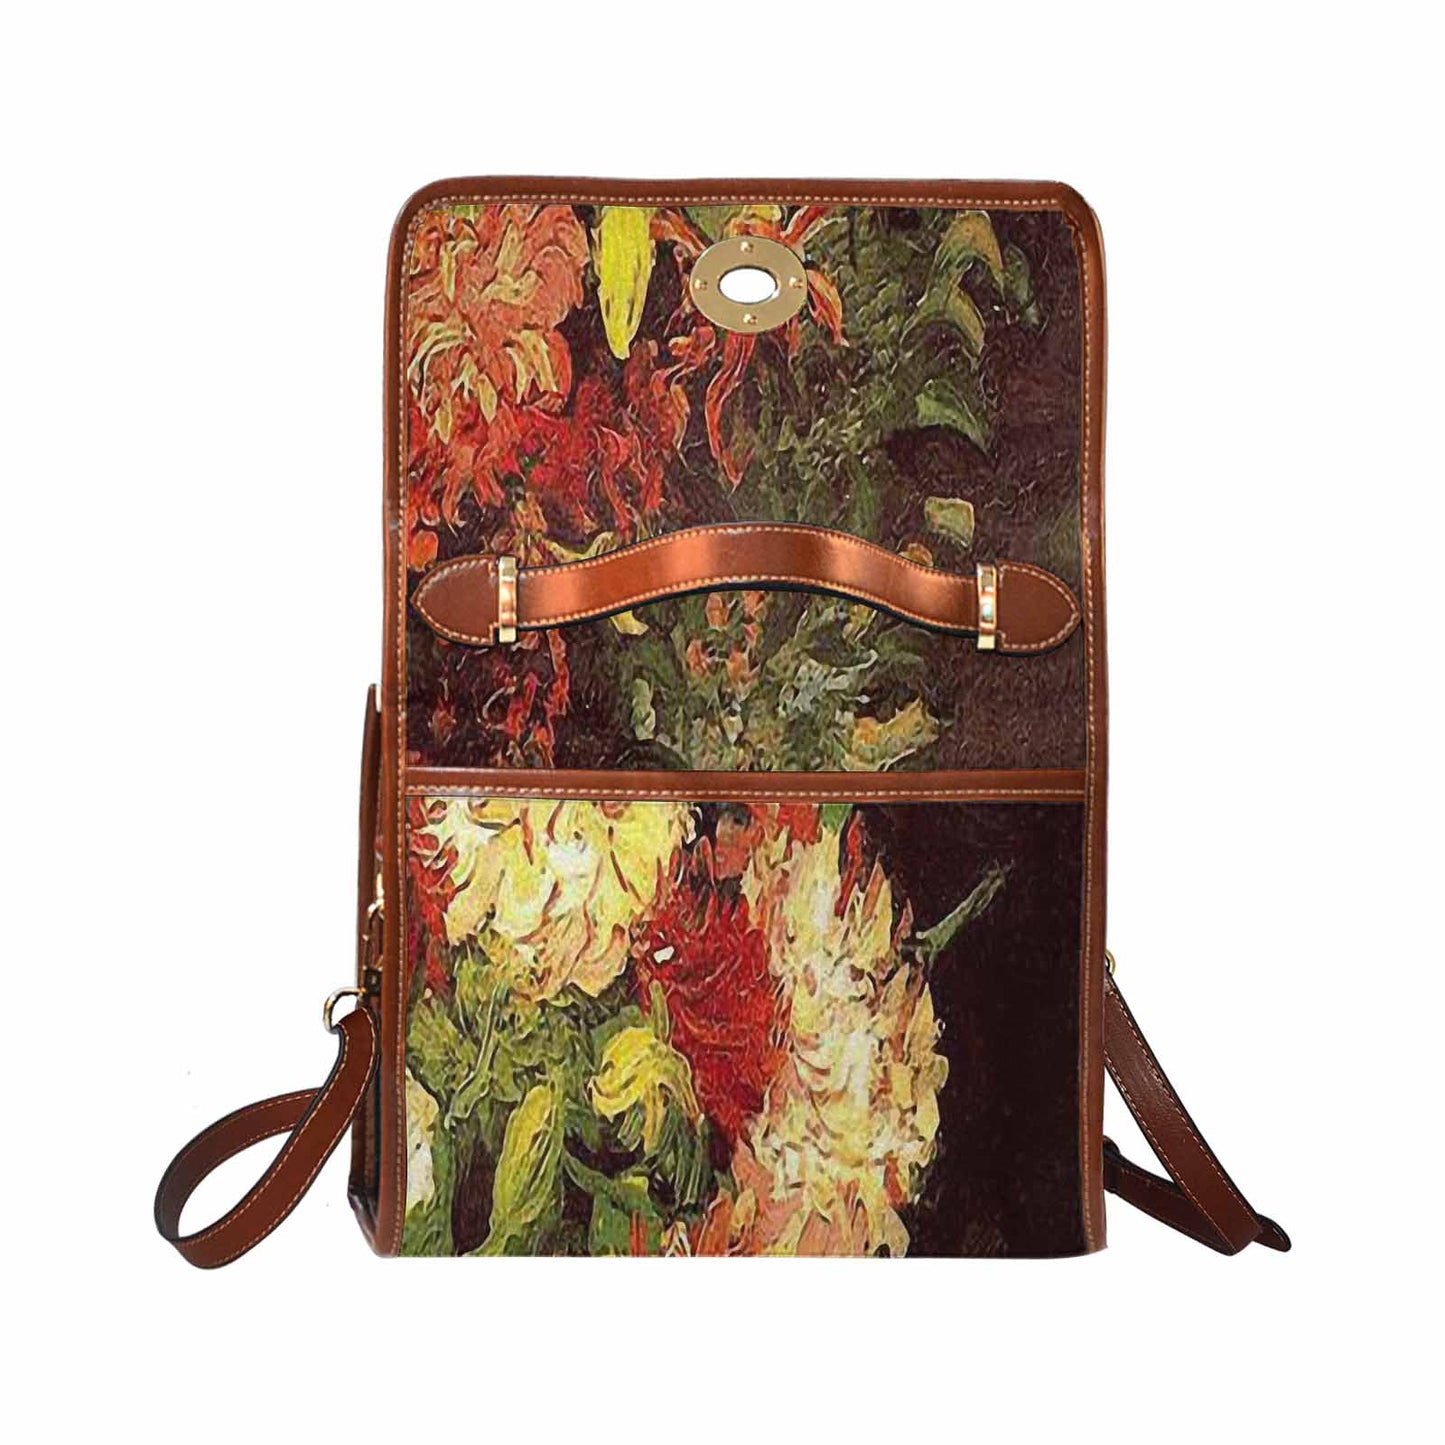 Vintage Floral Handbag, Design 33 Model 1695341 C20